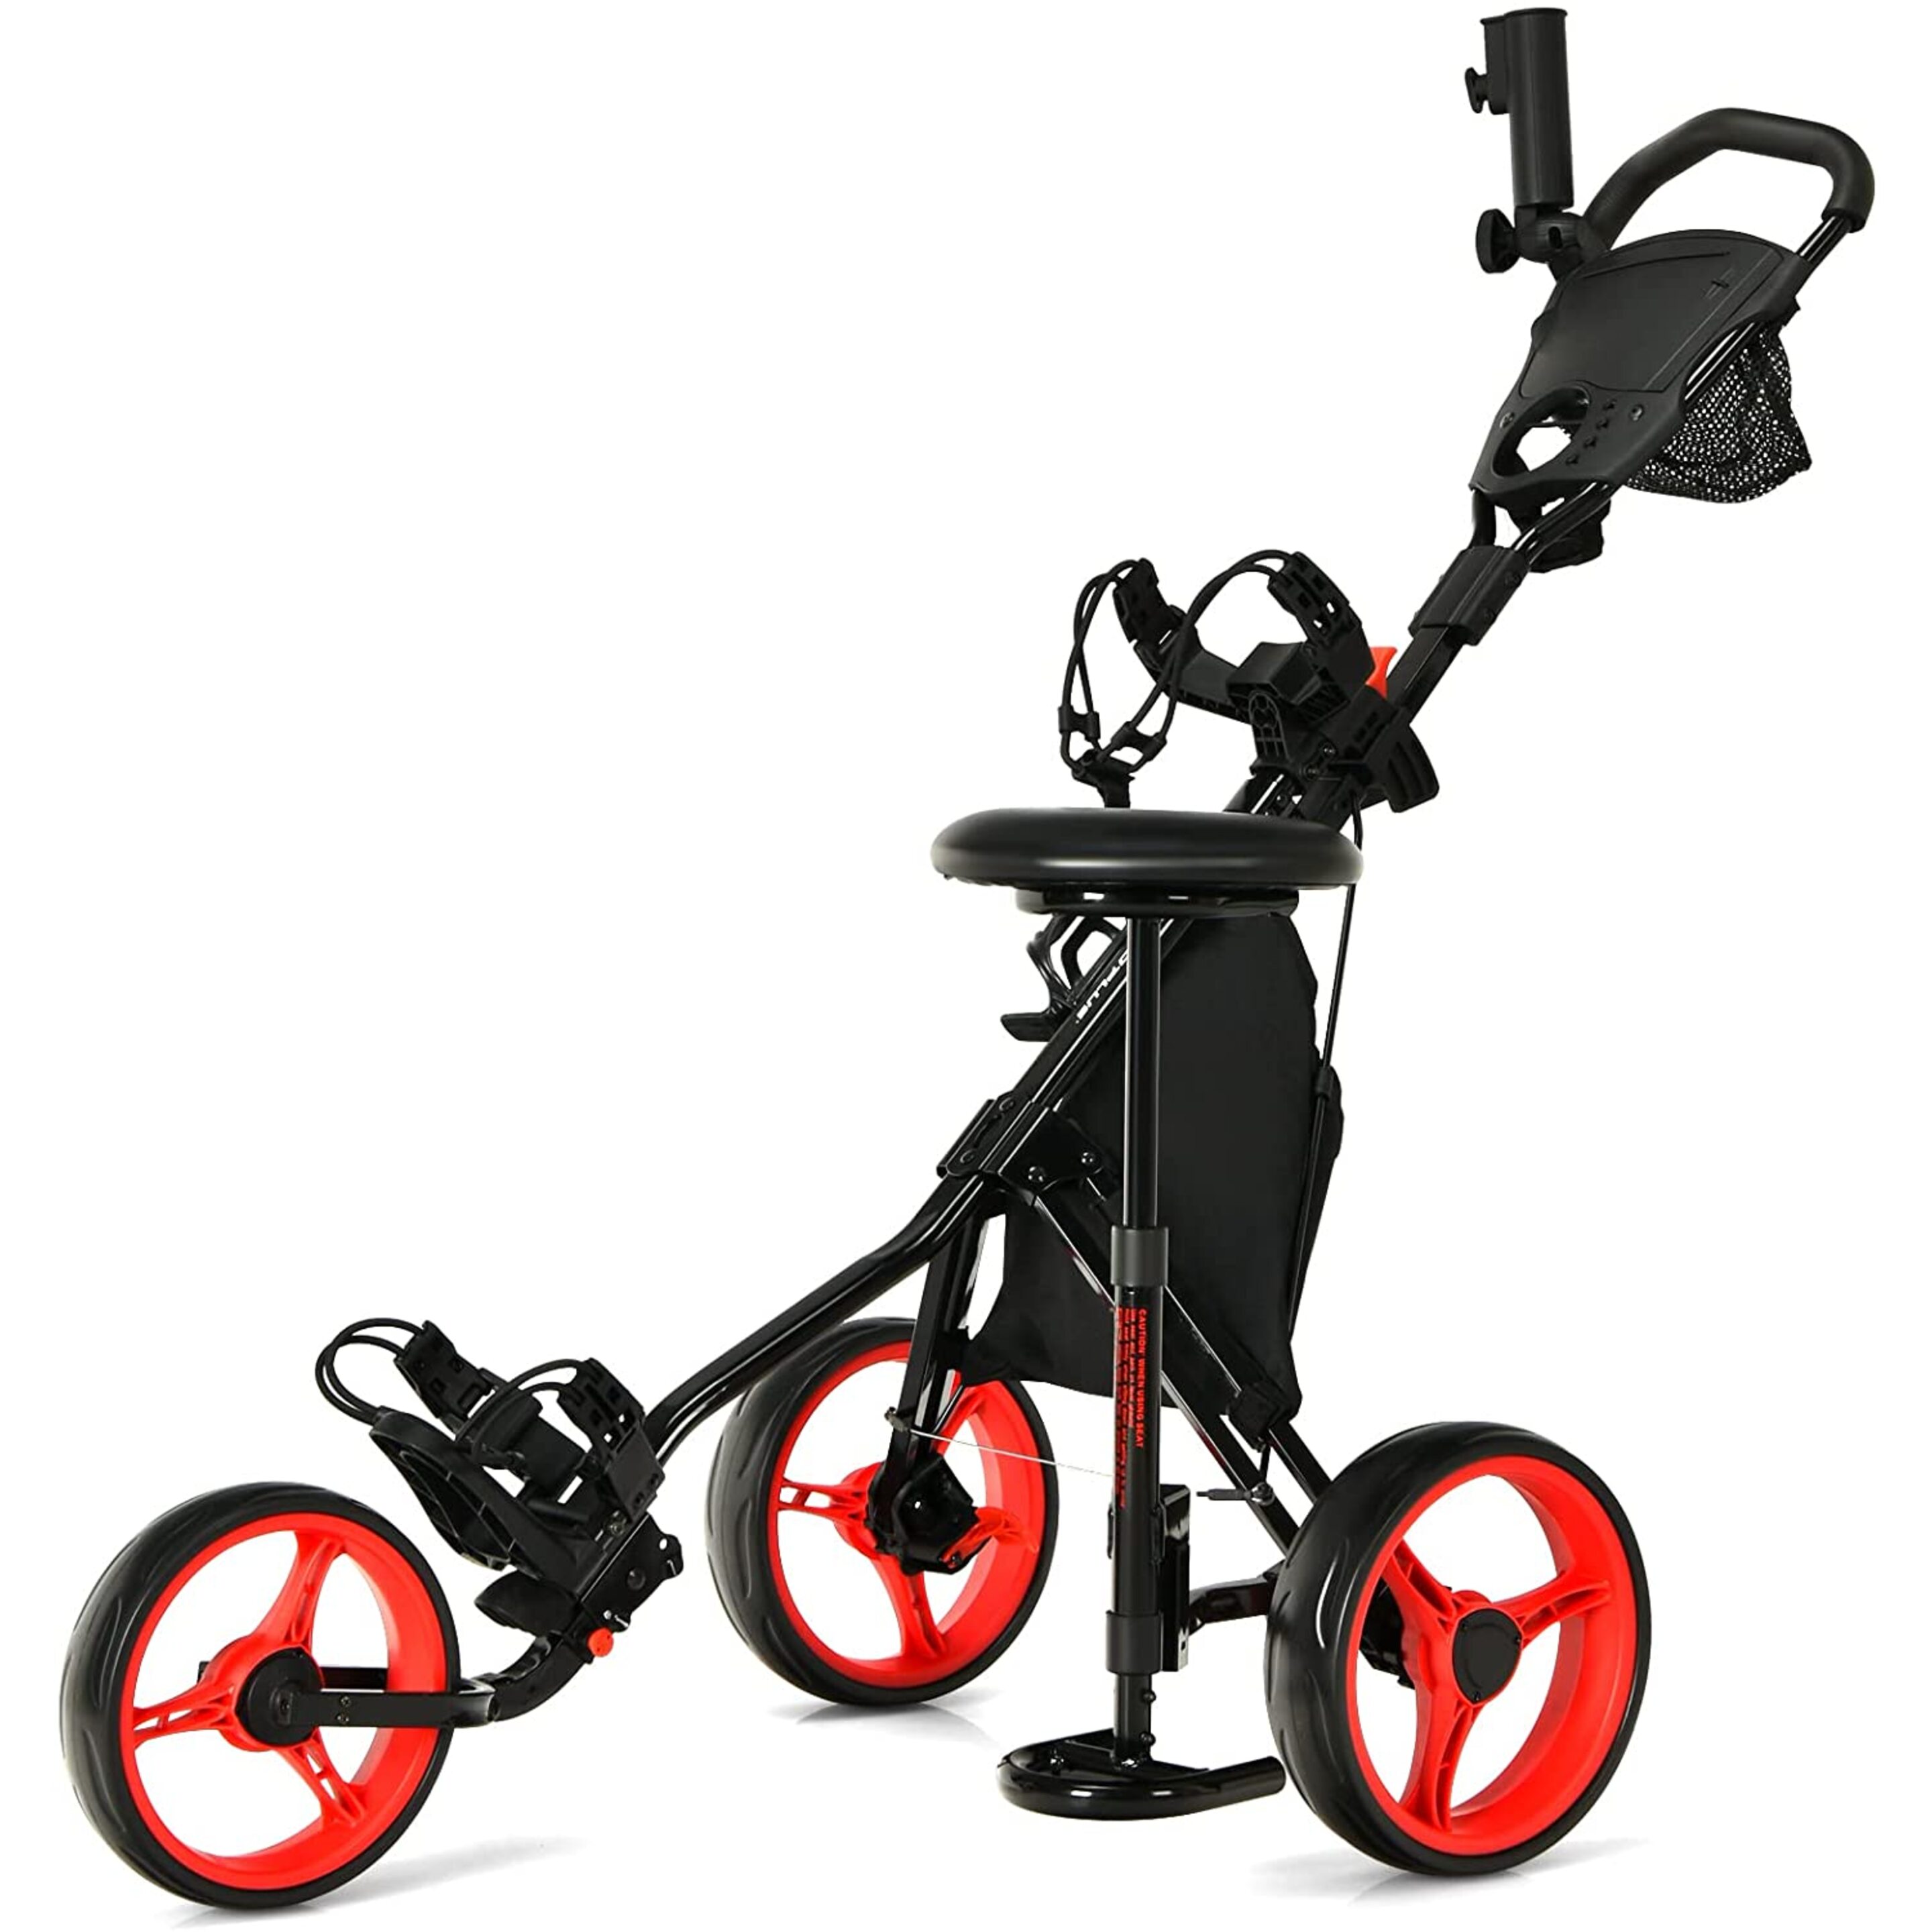 Carro De Golf Con 3 Ruedas Y Plegable 4 Posiciones Regulables En Altura Costway - negro-rojo - 